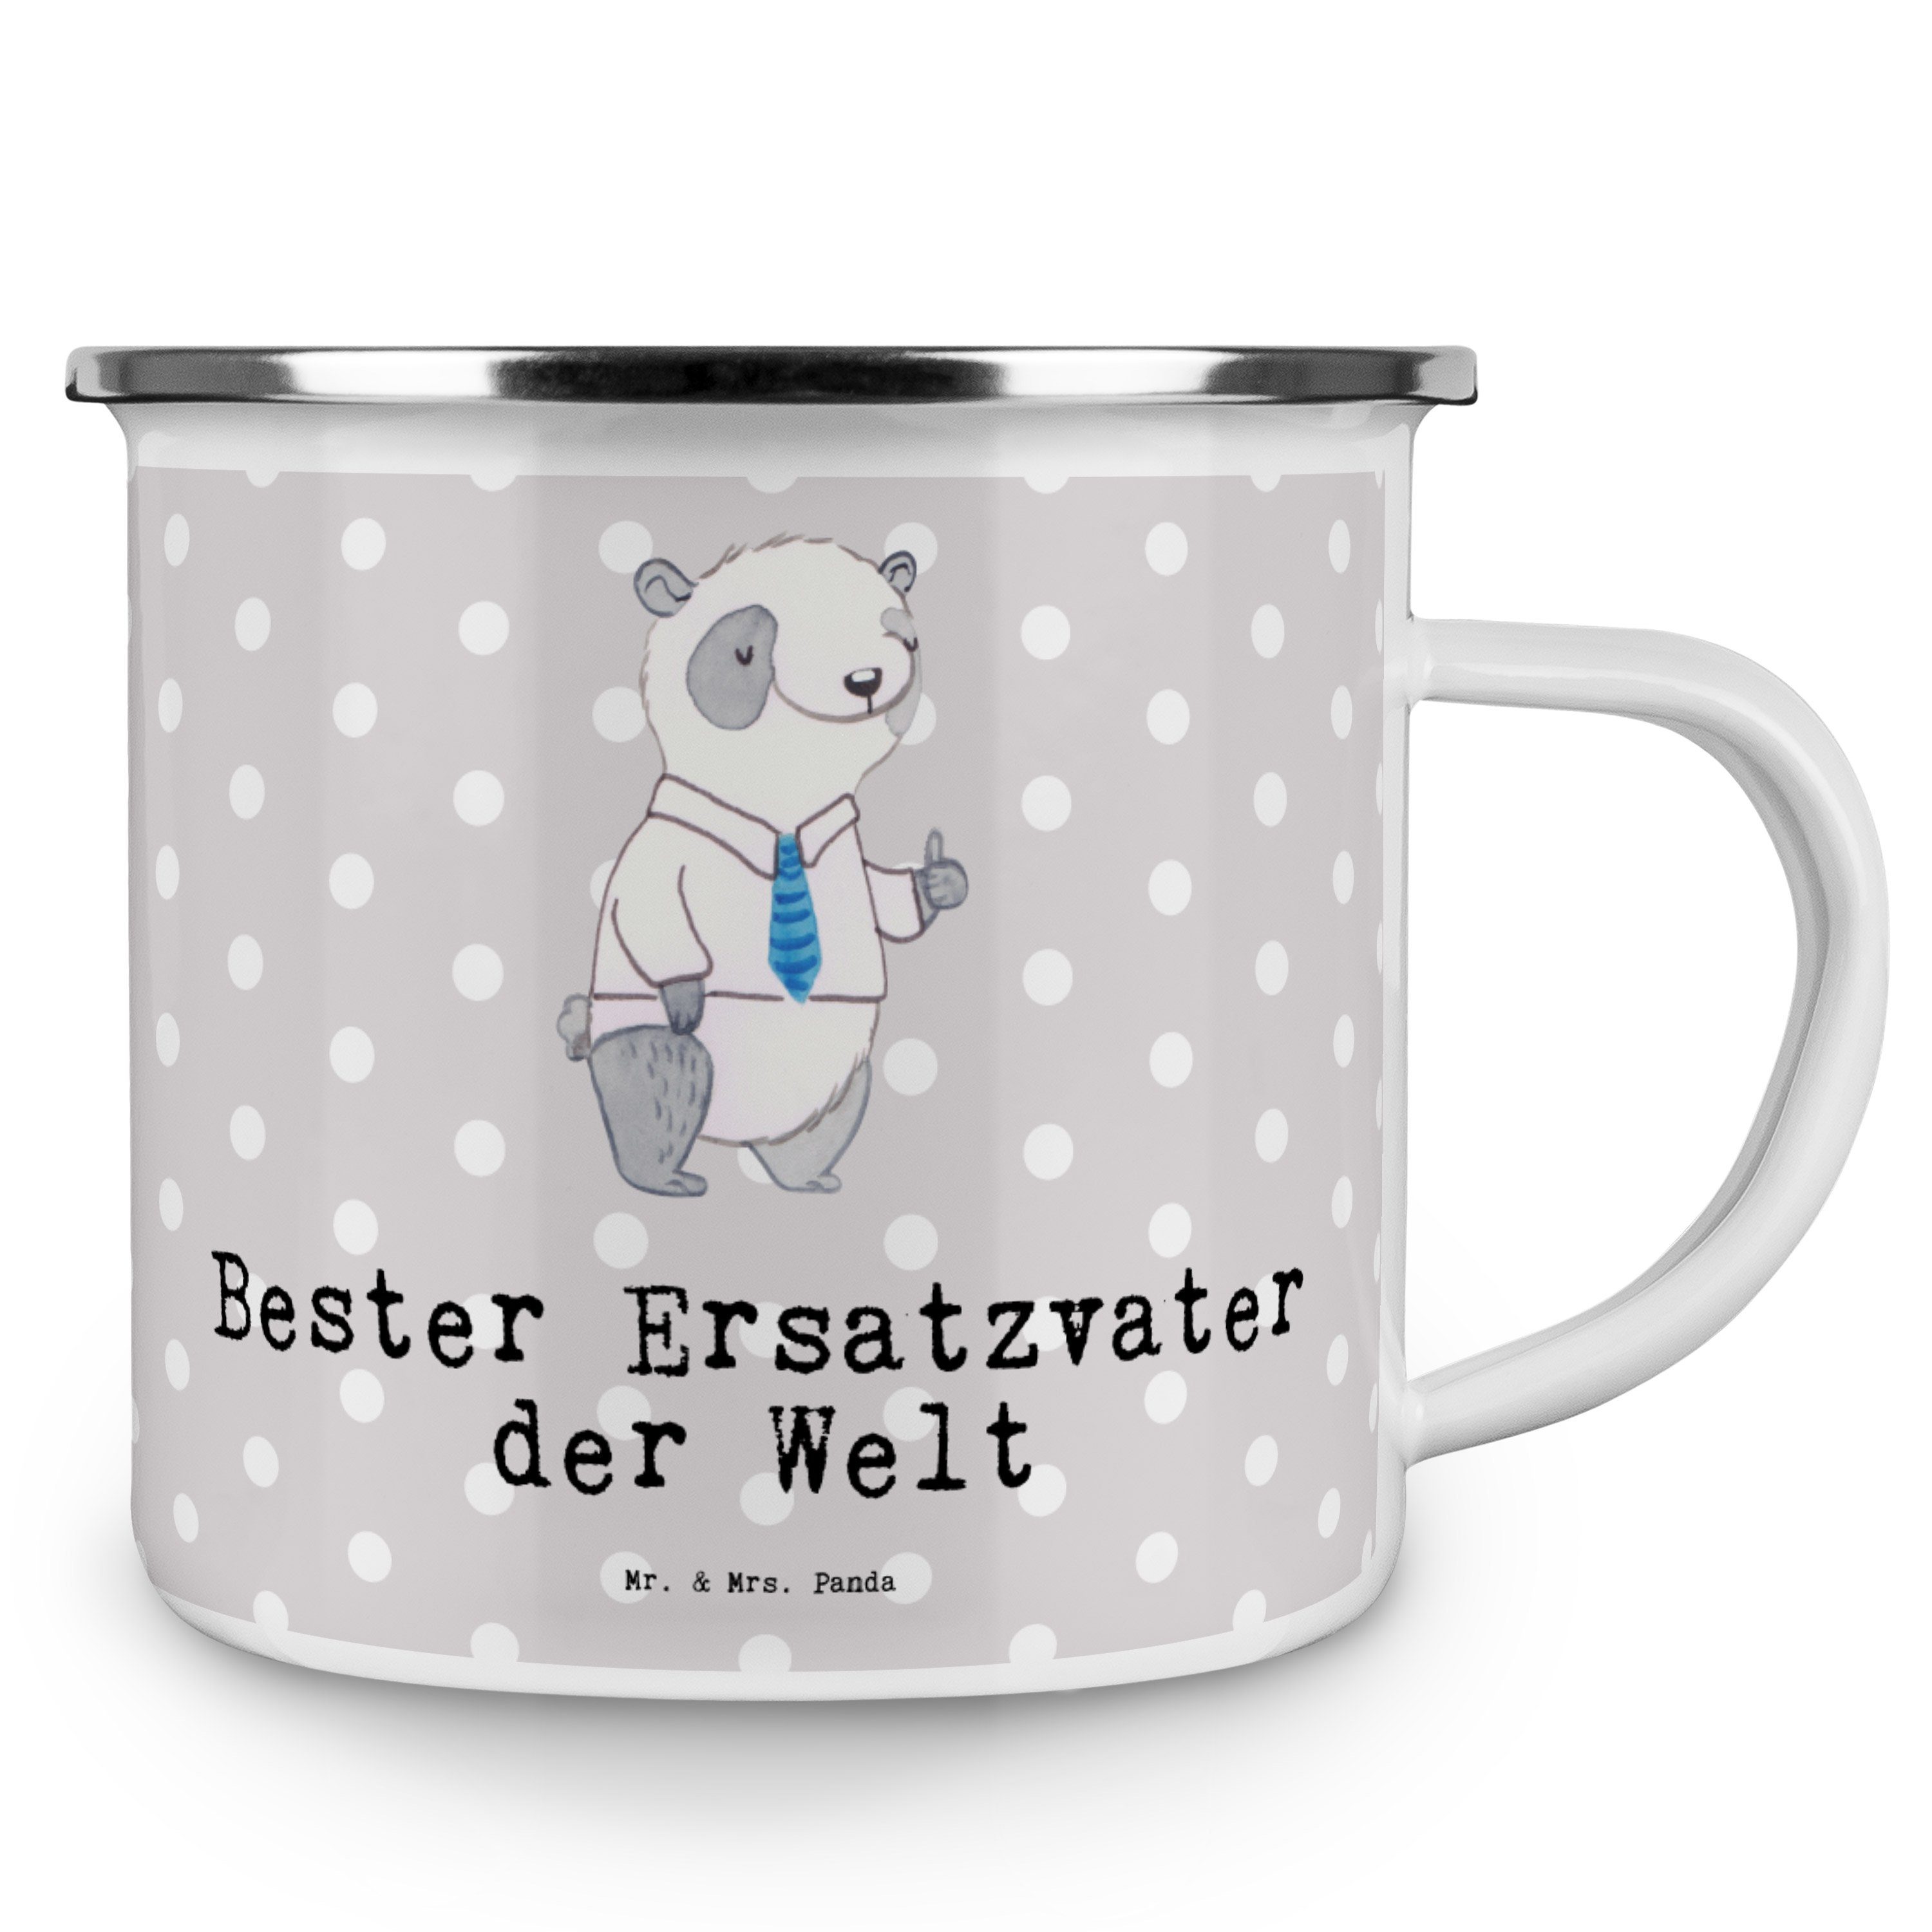 Mr. & Mrs. Panda der Geschenk, Welt Panda Geschenk, Grau Bester - Ersatzvater - Emaille Pastell Becher